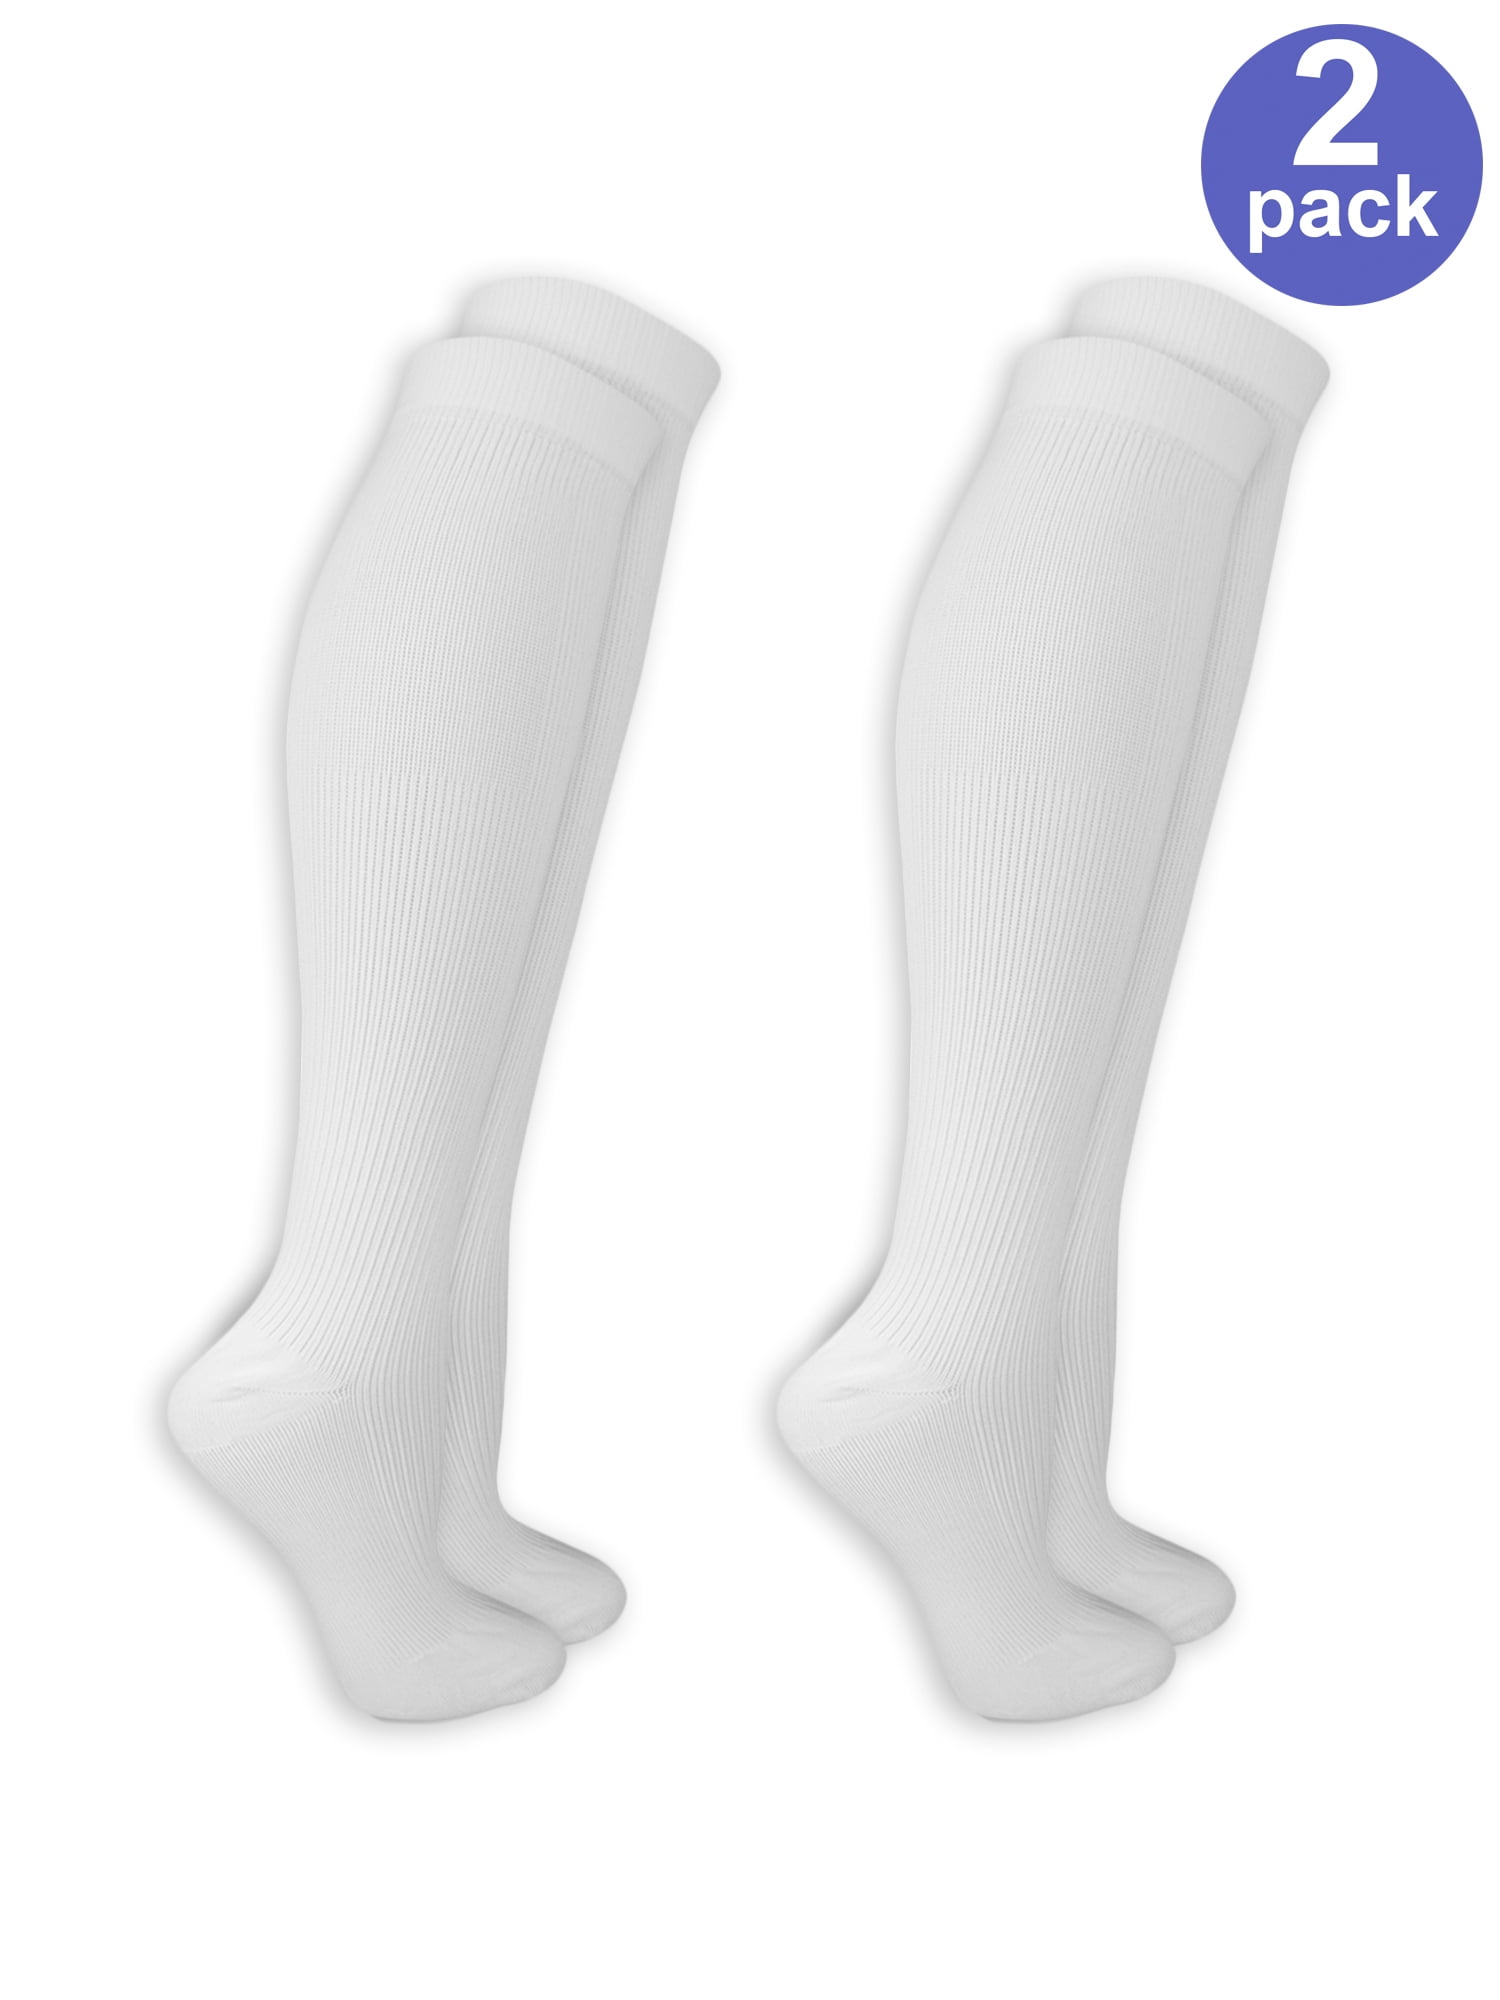 7-13X 3 Packs Black /& White Knee High Stockings for Girls